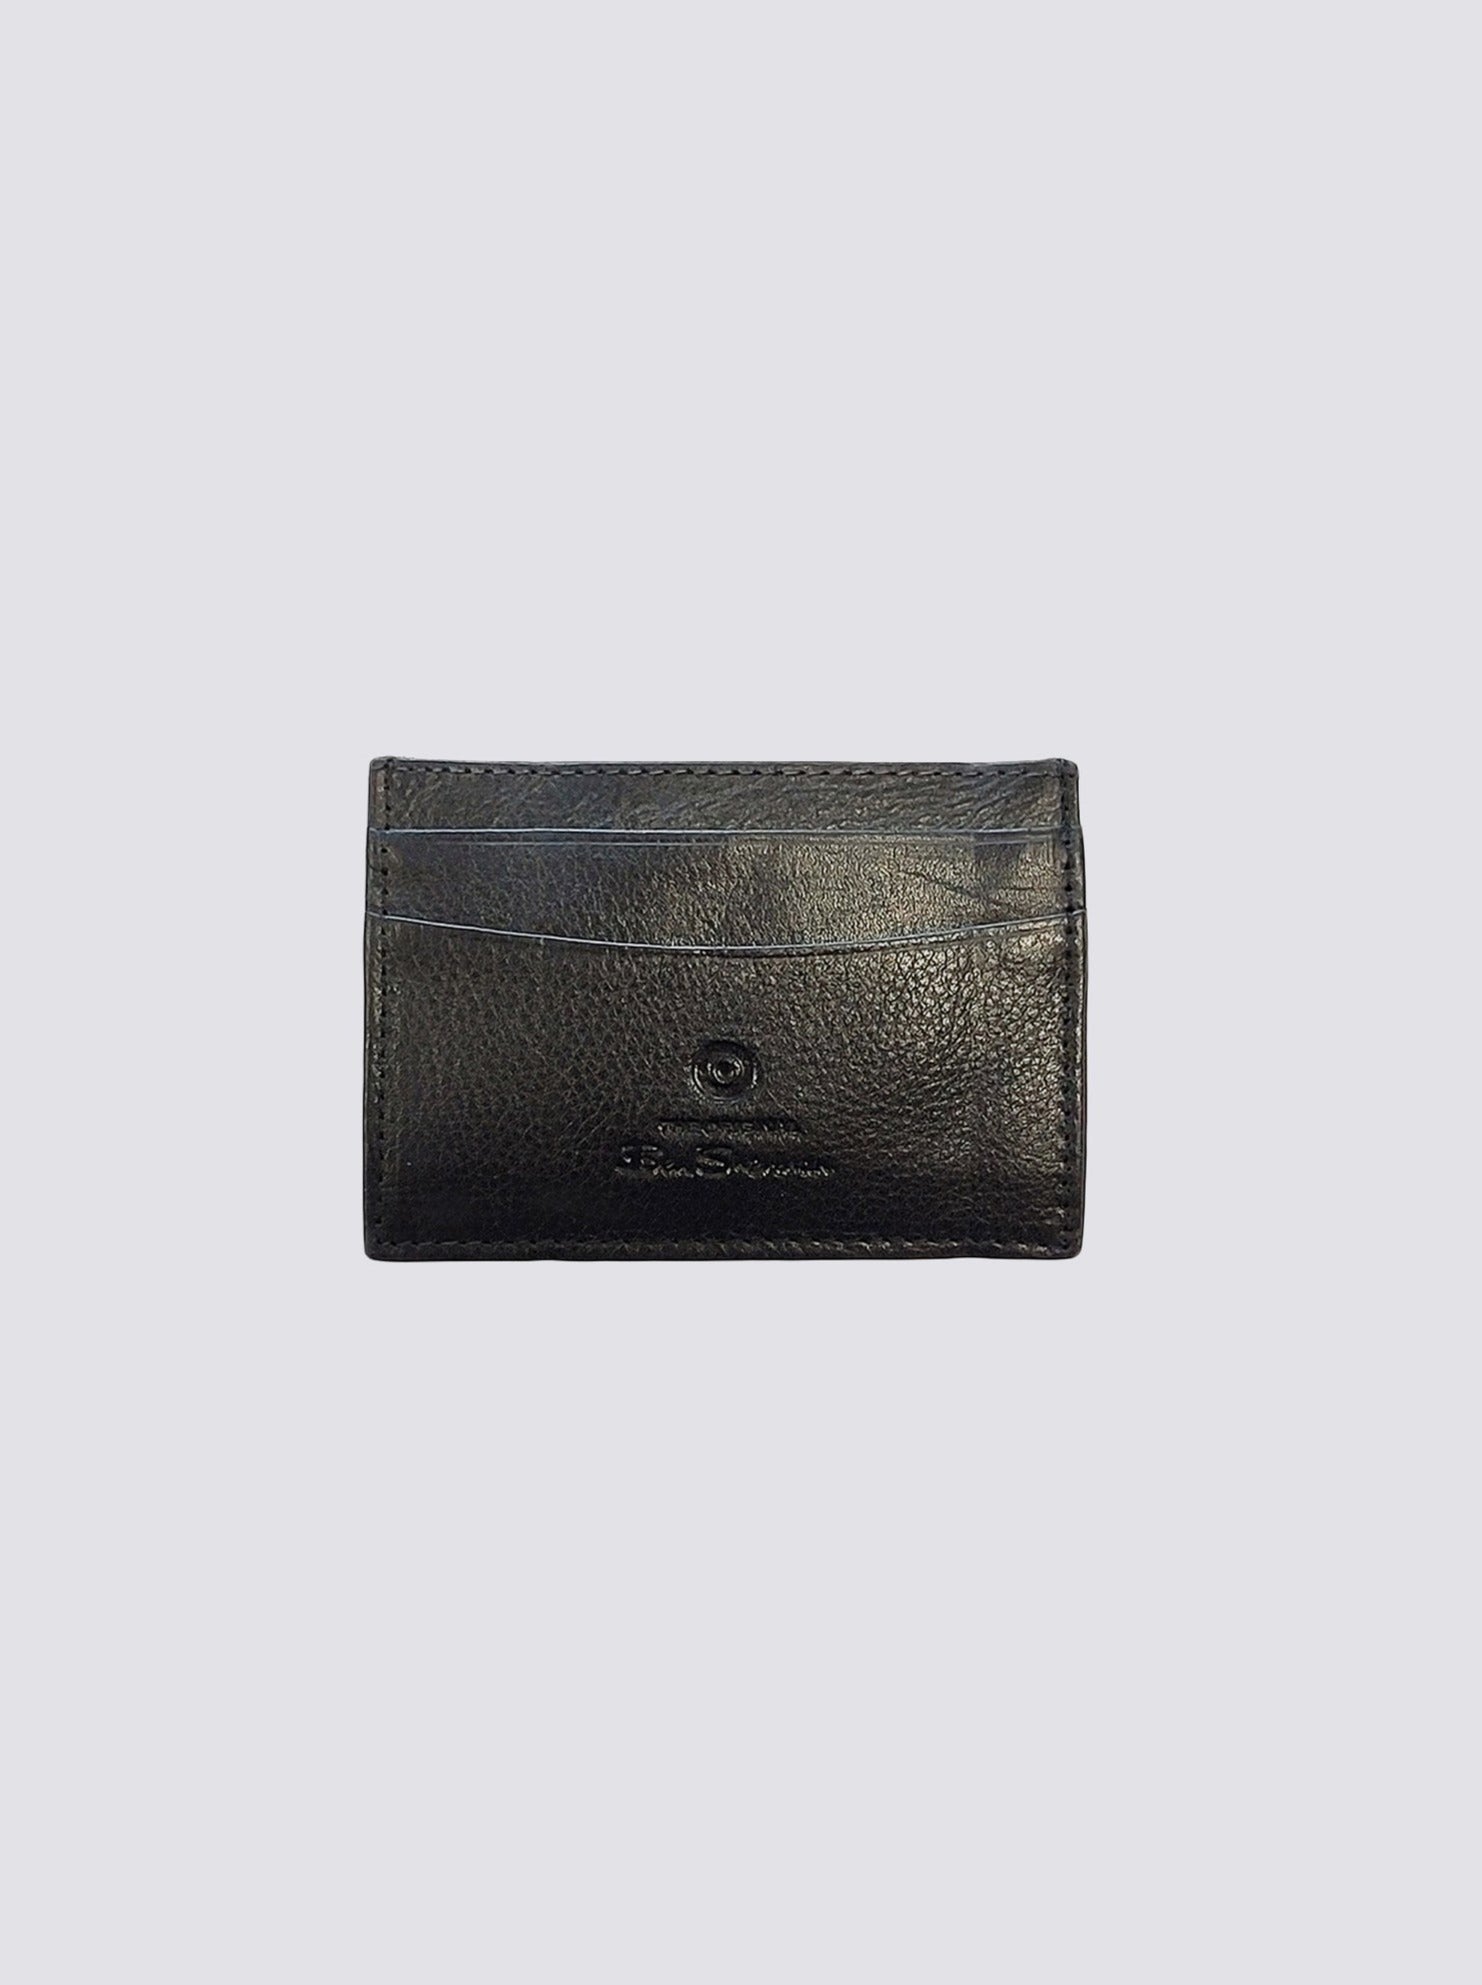 Coles Leather Micro Wallet - Black - Ben Sherman